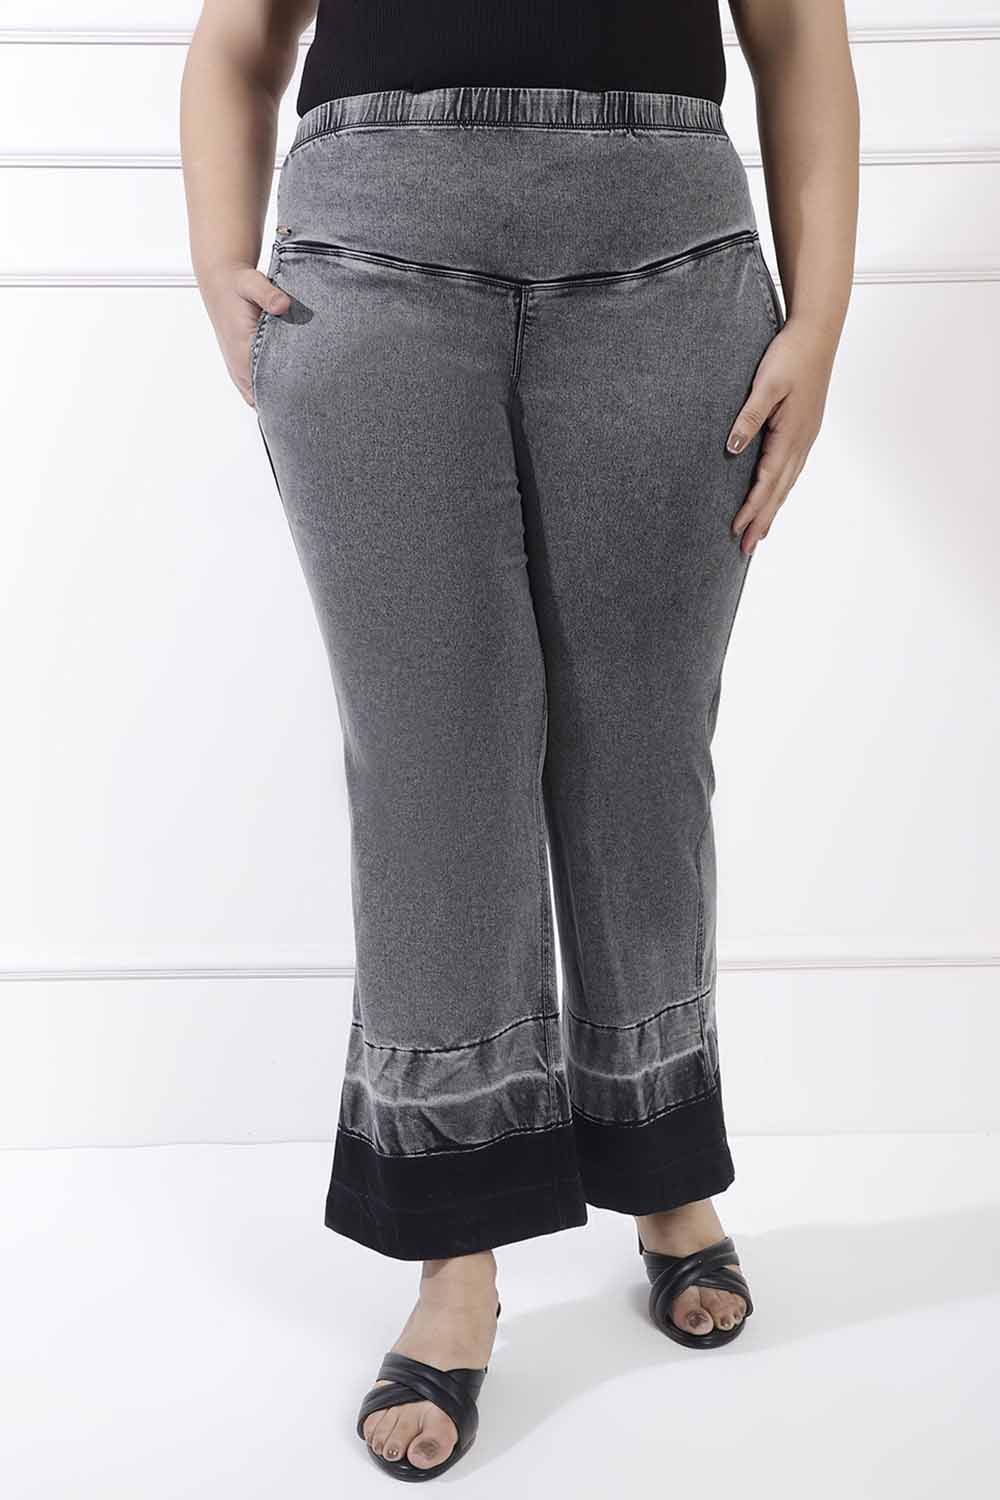 Buy Ash Black Designer Flare Jeans